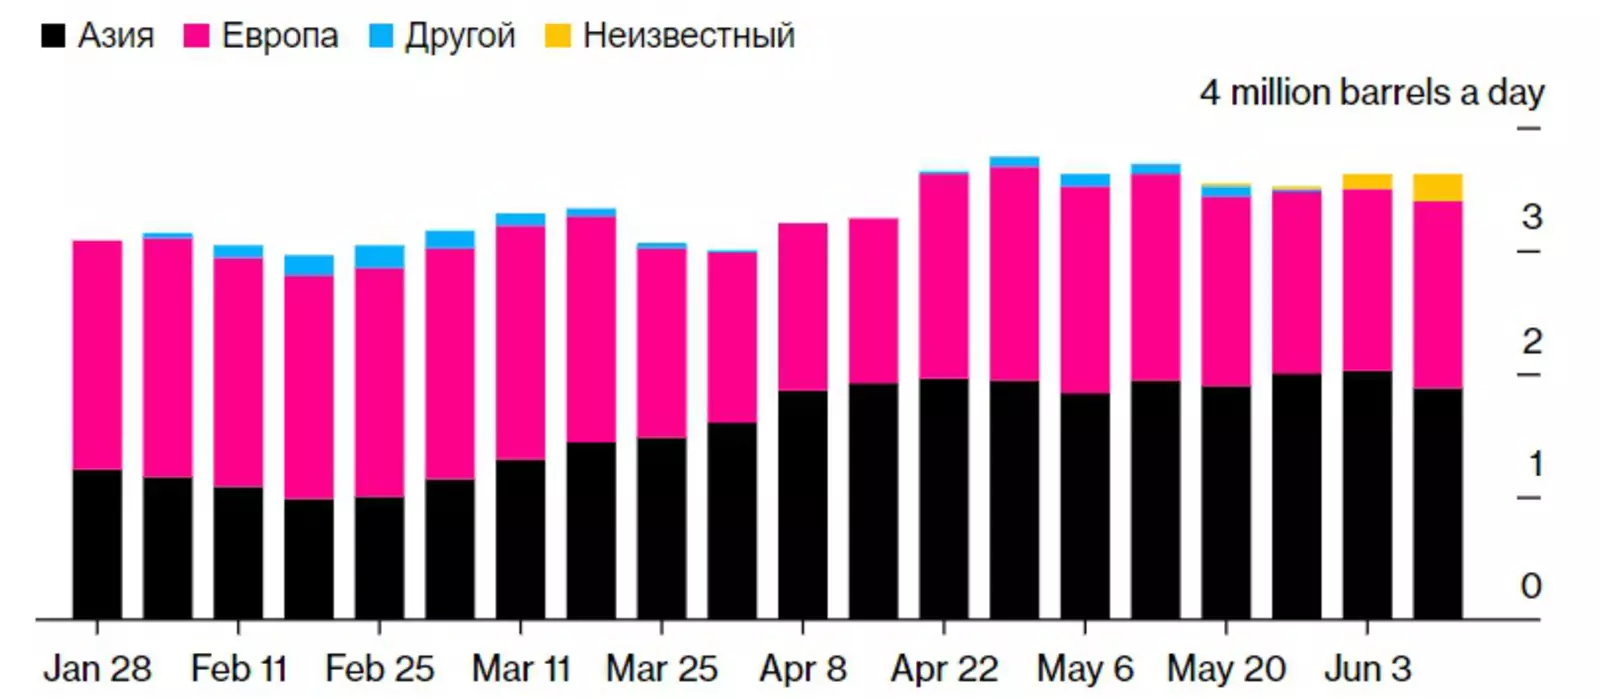 Рост объемов импорта российской нефти азиатскими странами 